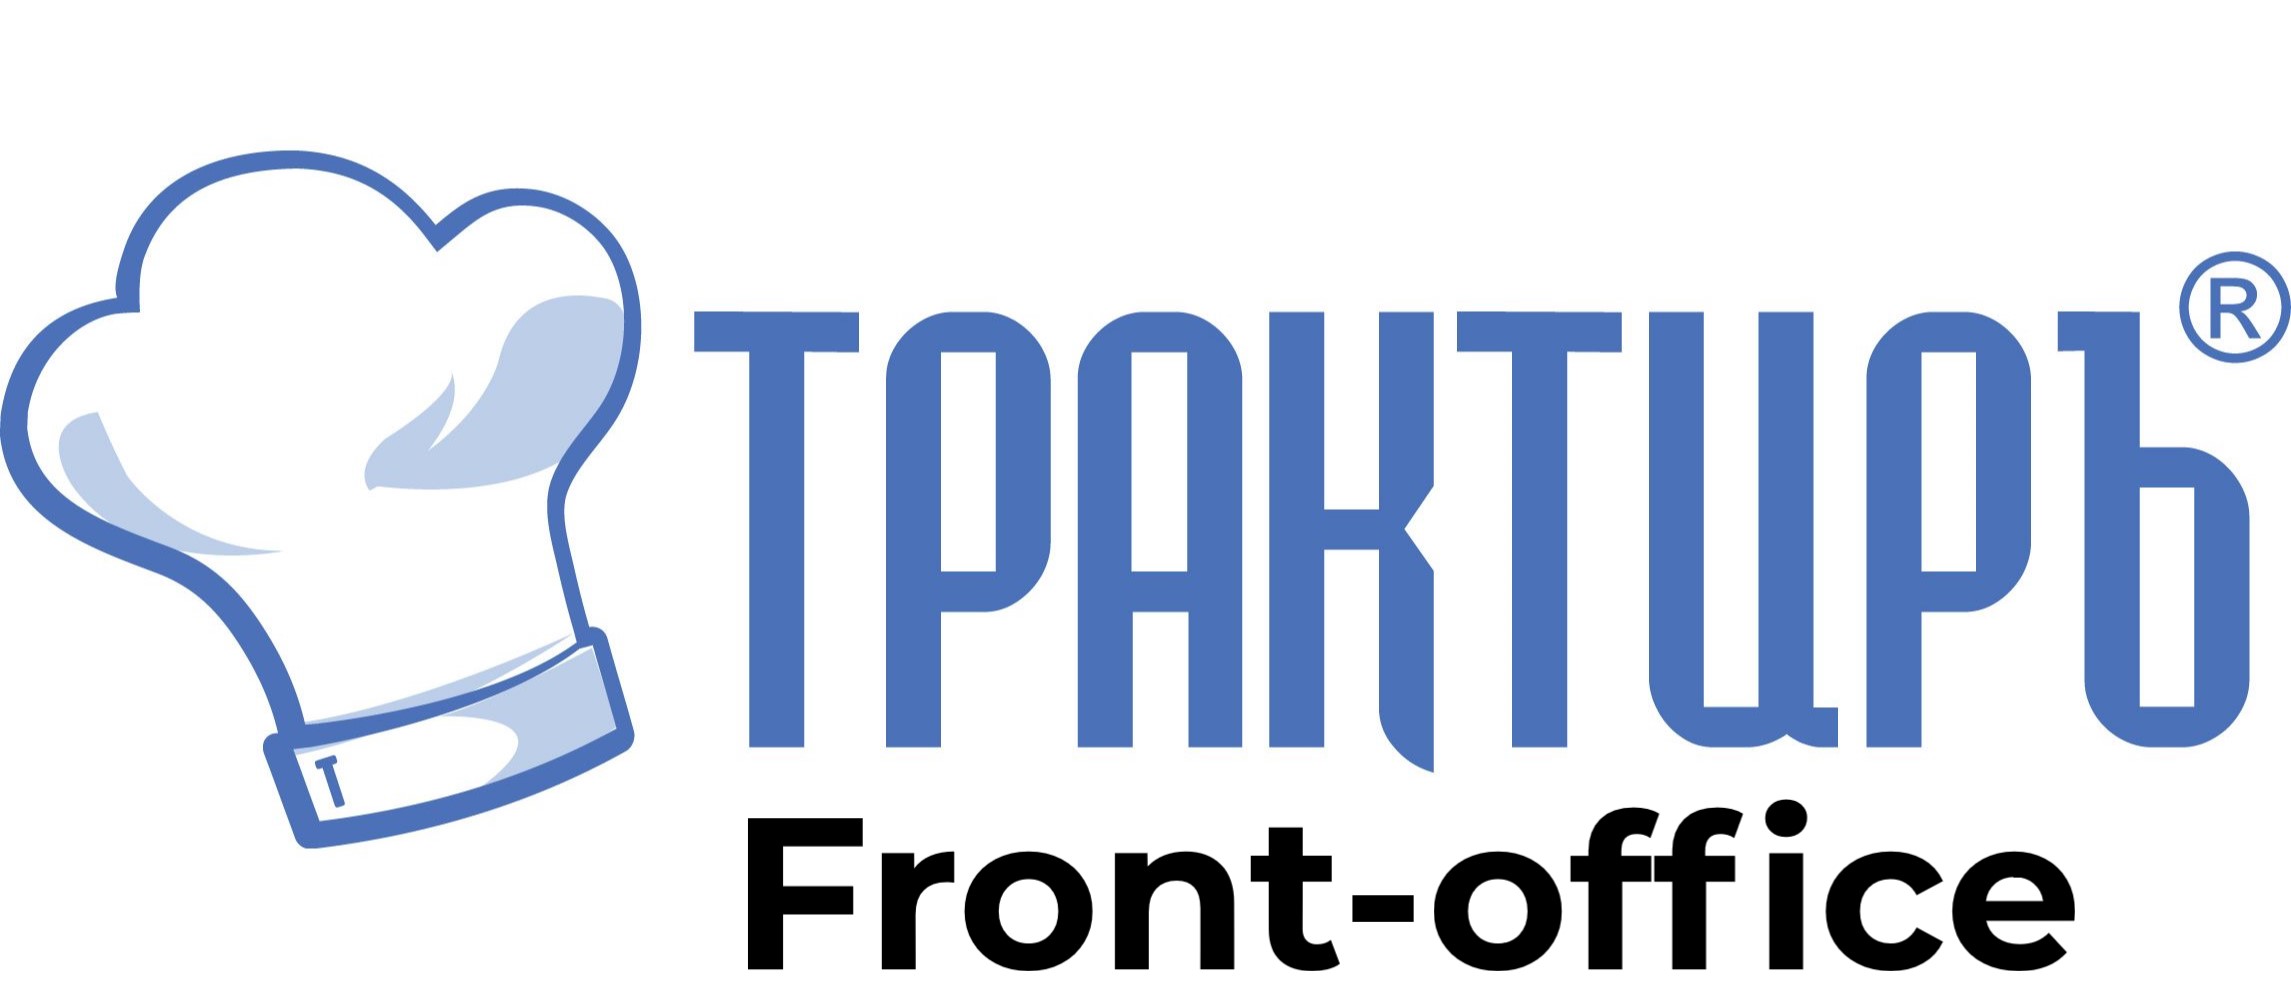 Трактиръ: Front-Office v4.5  Основная поставка в Южно-Сахалинске